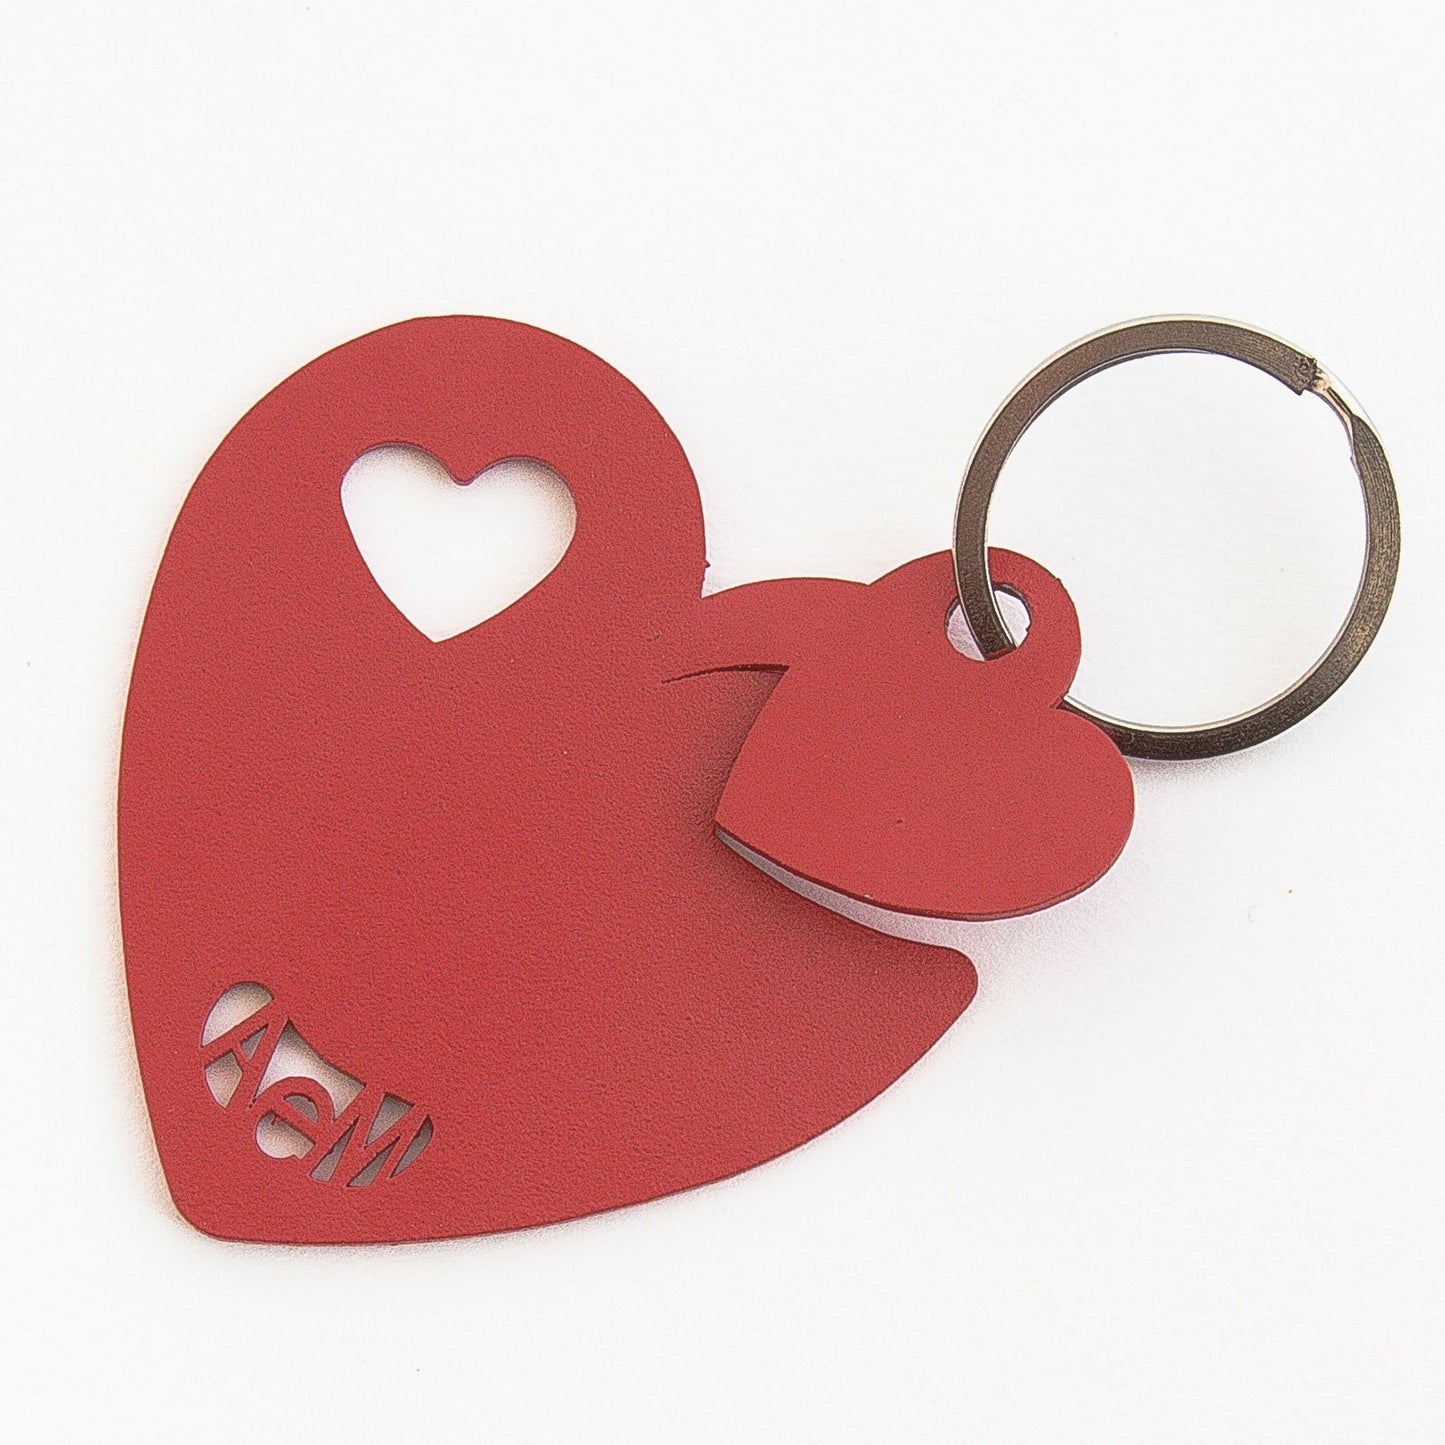 Portachiavi in metallo verniciato a forma di cuore. Dimensioni: 6 x 6,5 cm. In negozio e online su tuttochic.it